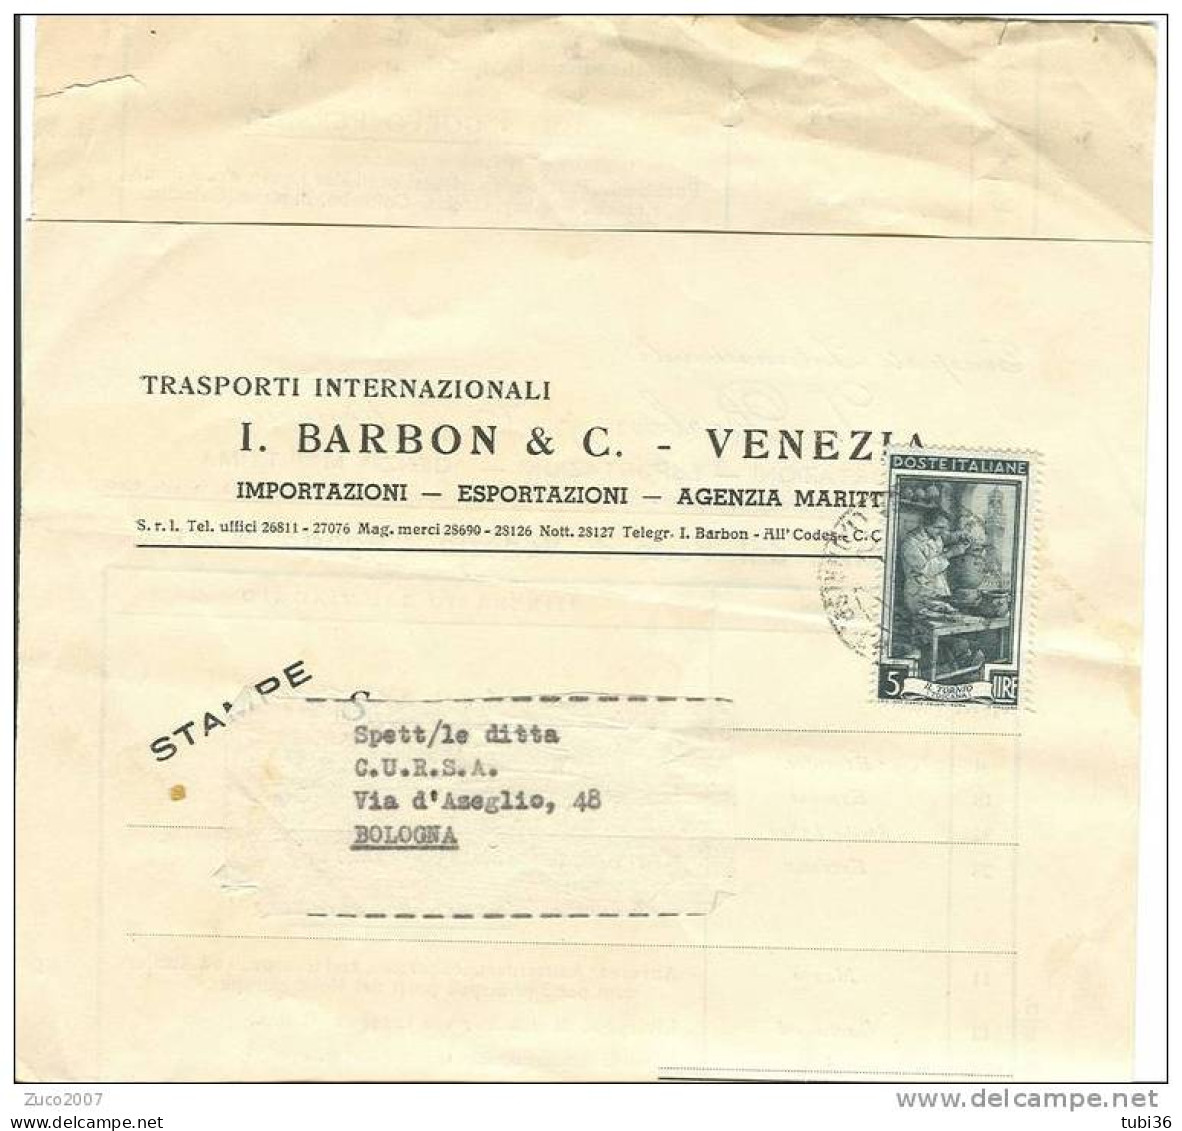 BARBON E C. - VENEZIA - TRASPORTI INTERNAZIONALI - CALENDARIO PARTENZE DAL PORTO DI VENEZIA  1952. - Mundo